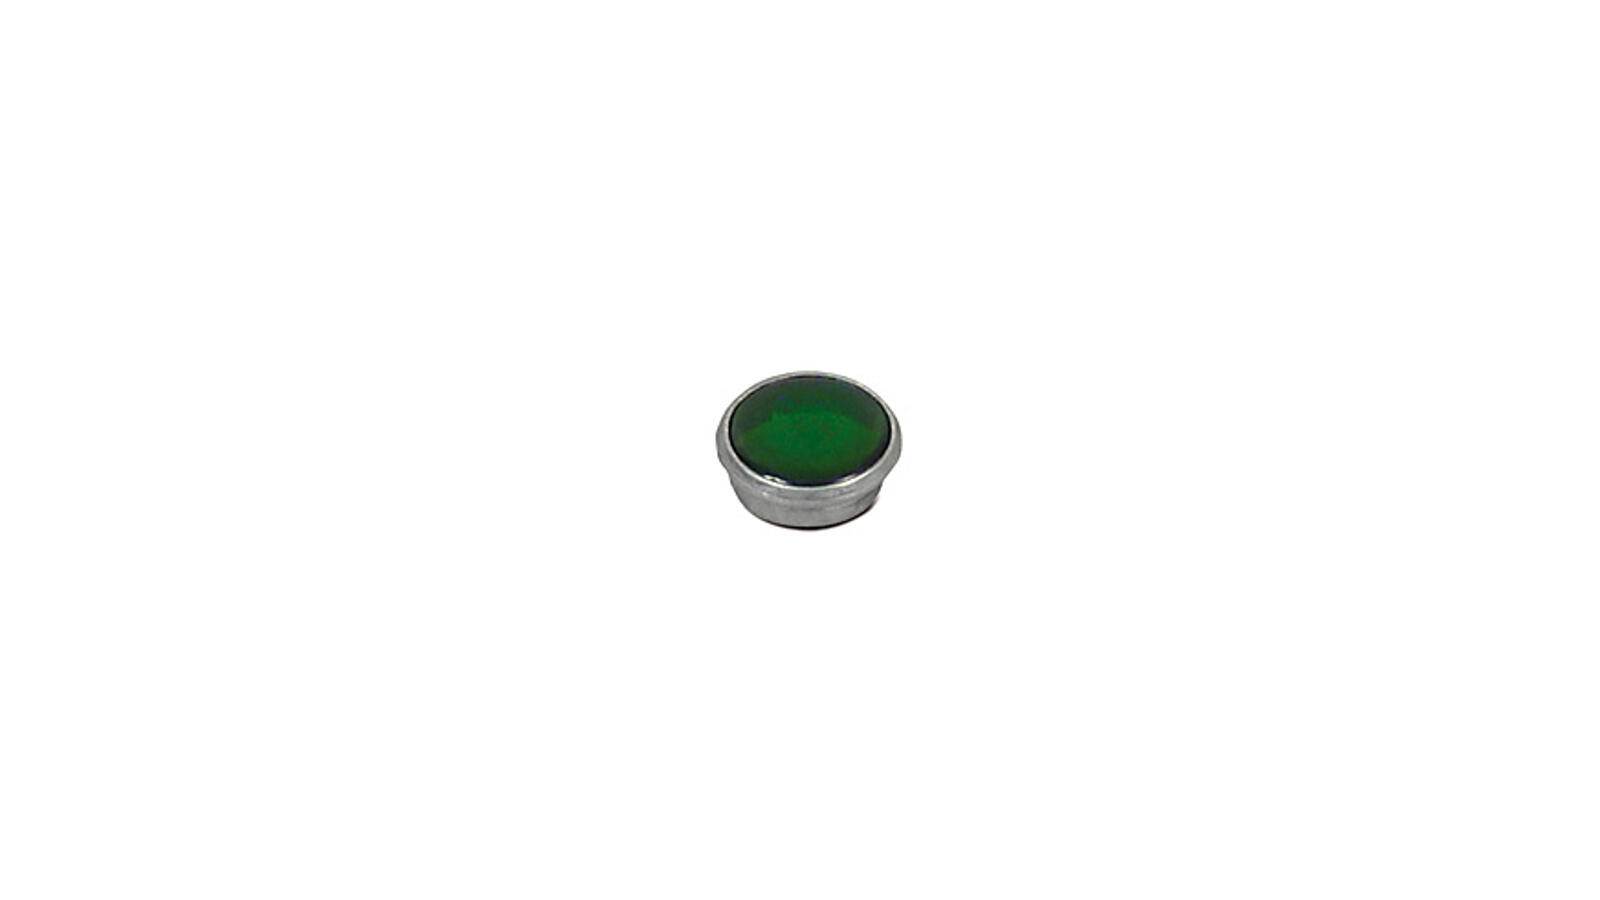 Kontrollglas grün (Leerlaufanzeige) KR51, SR4-